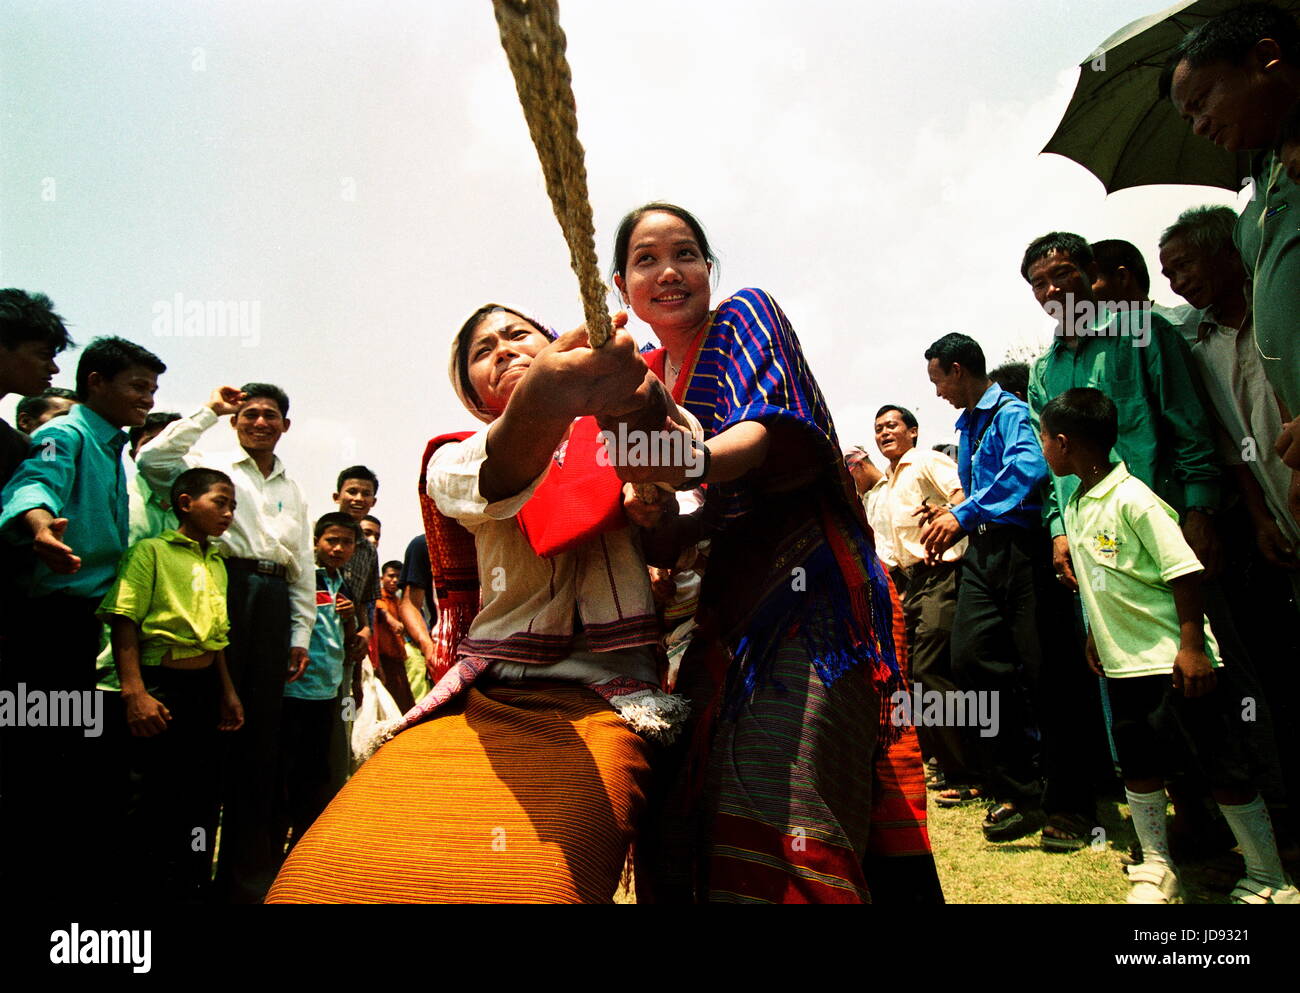 Nouvelle Année festival appelé Biju dans la langue de la tribu qui a eu lieu le 1er jour de baisakh le premier mois de l'année en organisant divers folk, tradition, cultu Banque D'Images